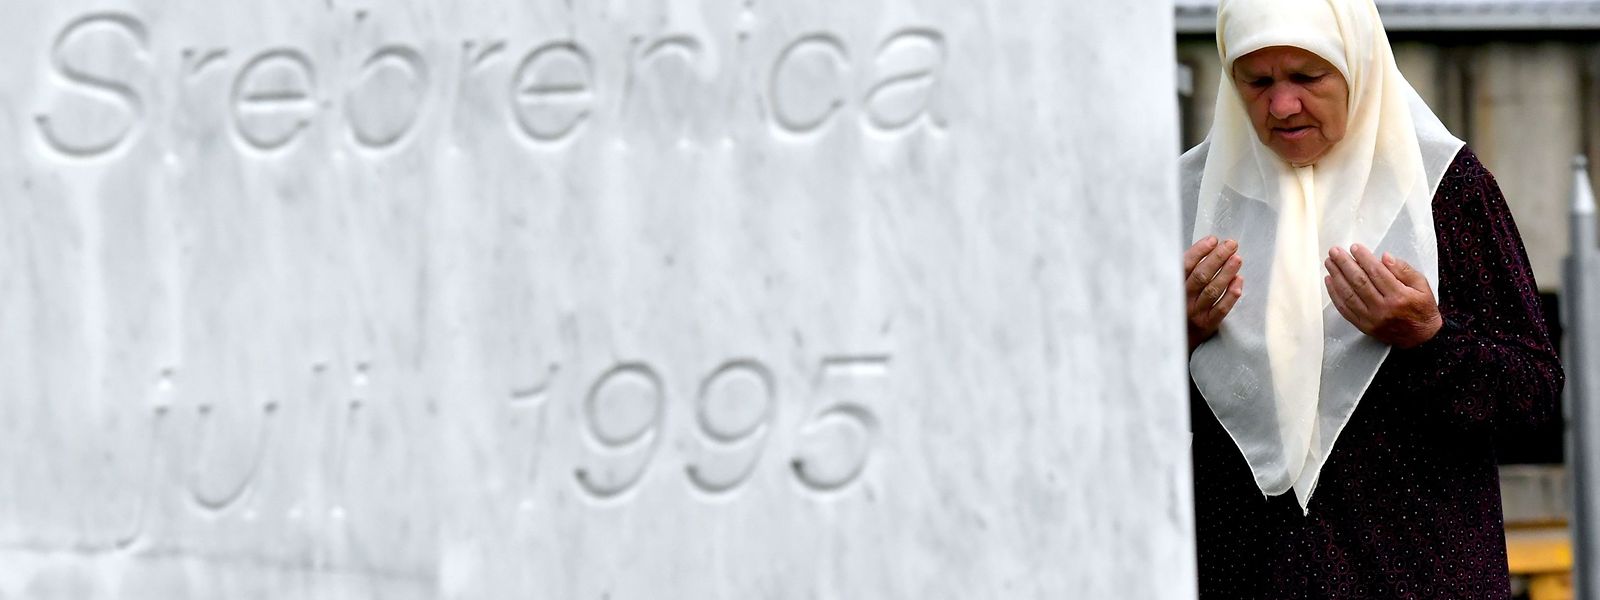 Srebrenica als Inbegriff des schlimmsten Kriegsverbrechens in Europa seit 1945.